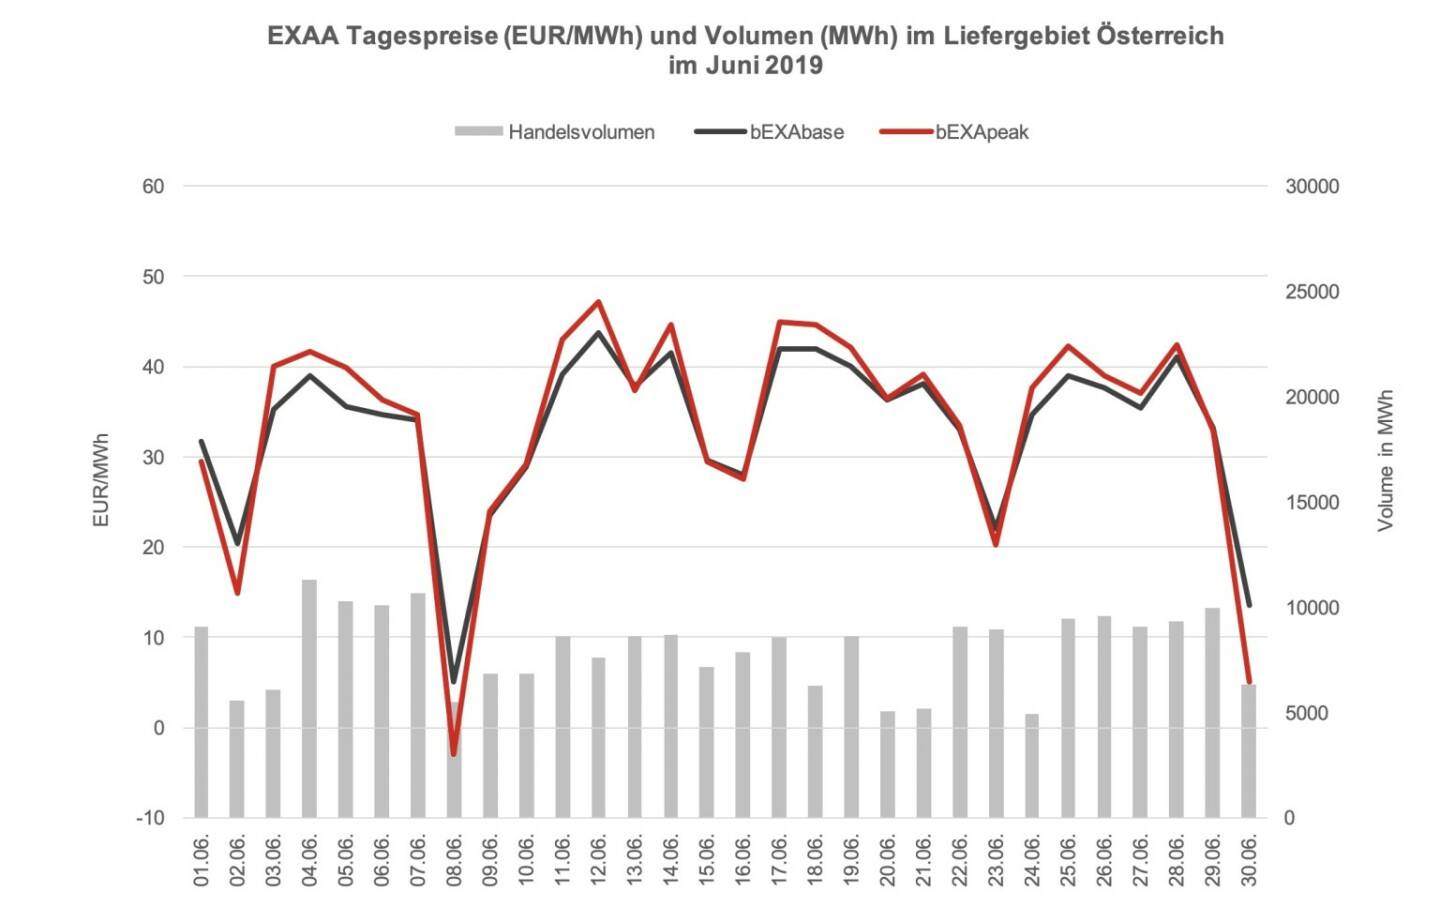 EXAA Tagespreise (EUR/MWh) und Volumen (MWh) im Liefergebiet Österreich im Juni 2019